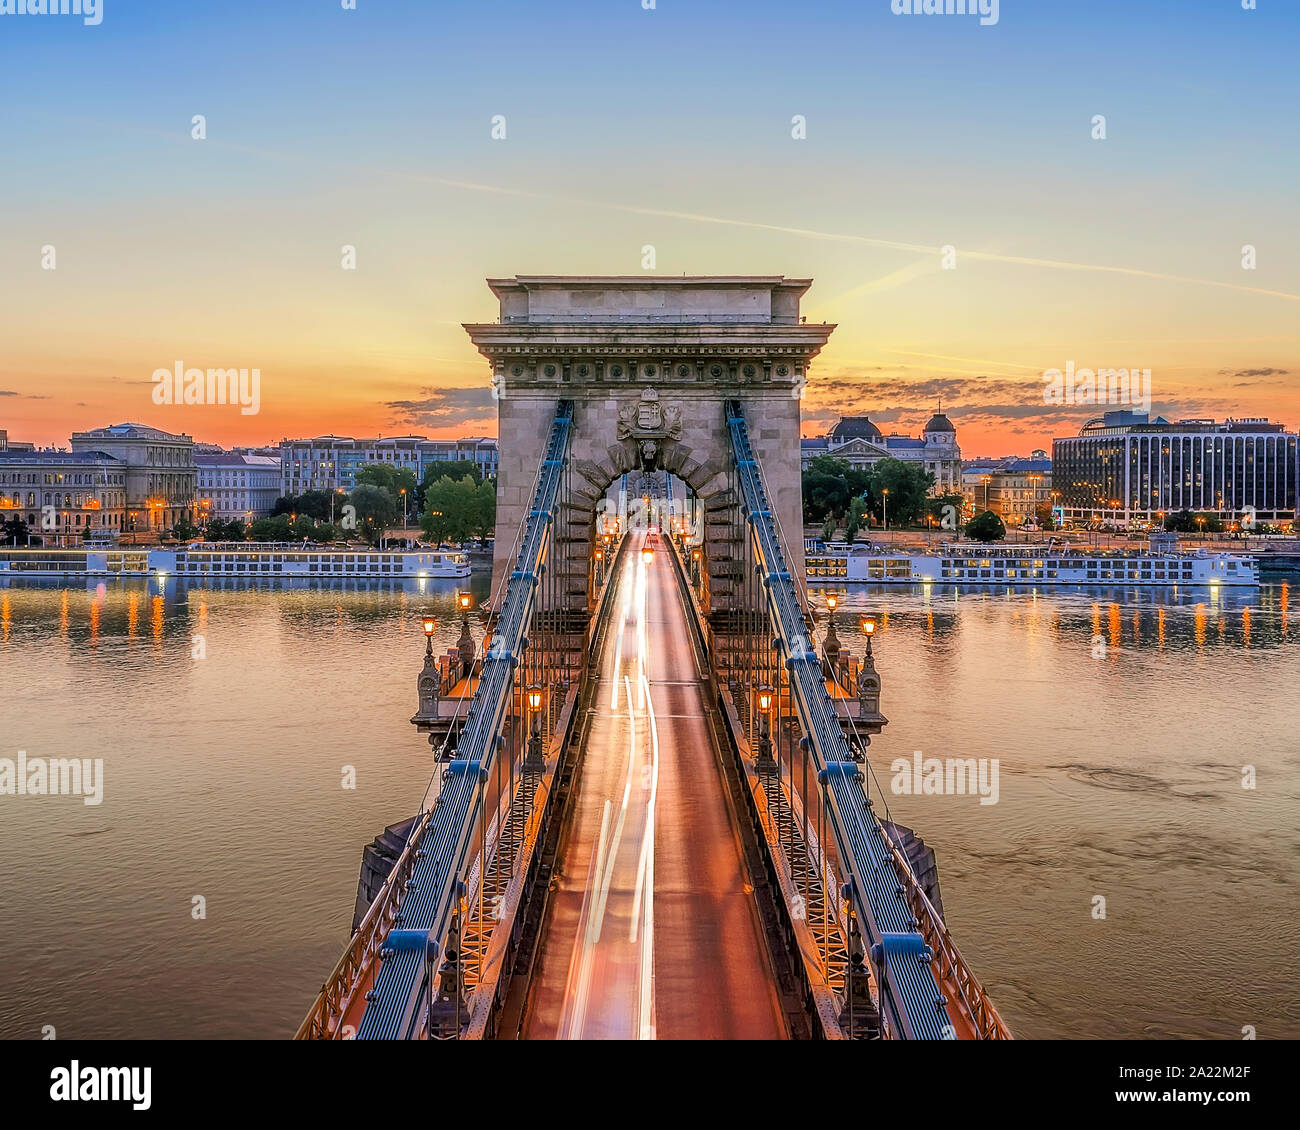 Il Ponte delle catene a Budapest, Ungheria. Fiume Danubio con barche. Traffico di sera con la luce dei sentieri. Paesaggio urbano dell'antenna. Foto Stock